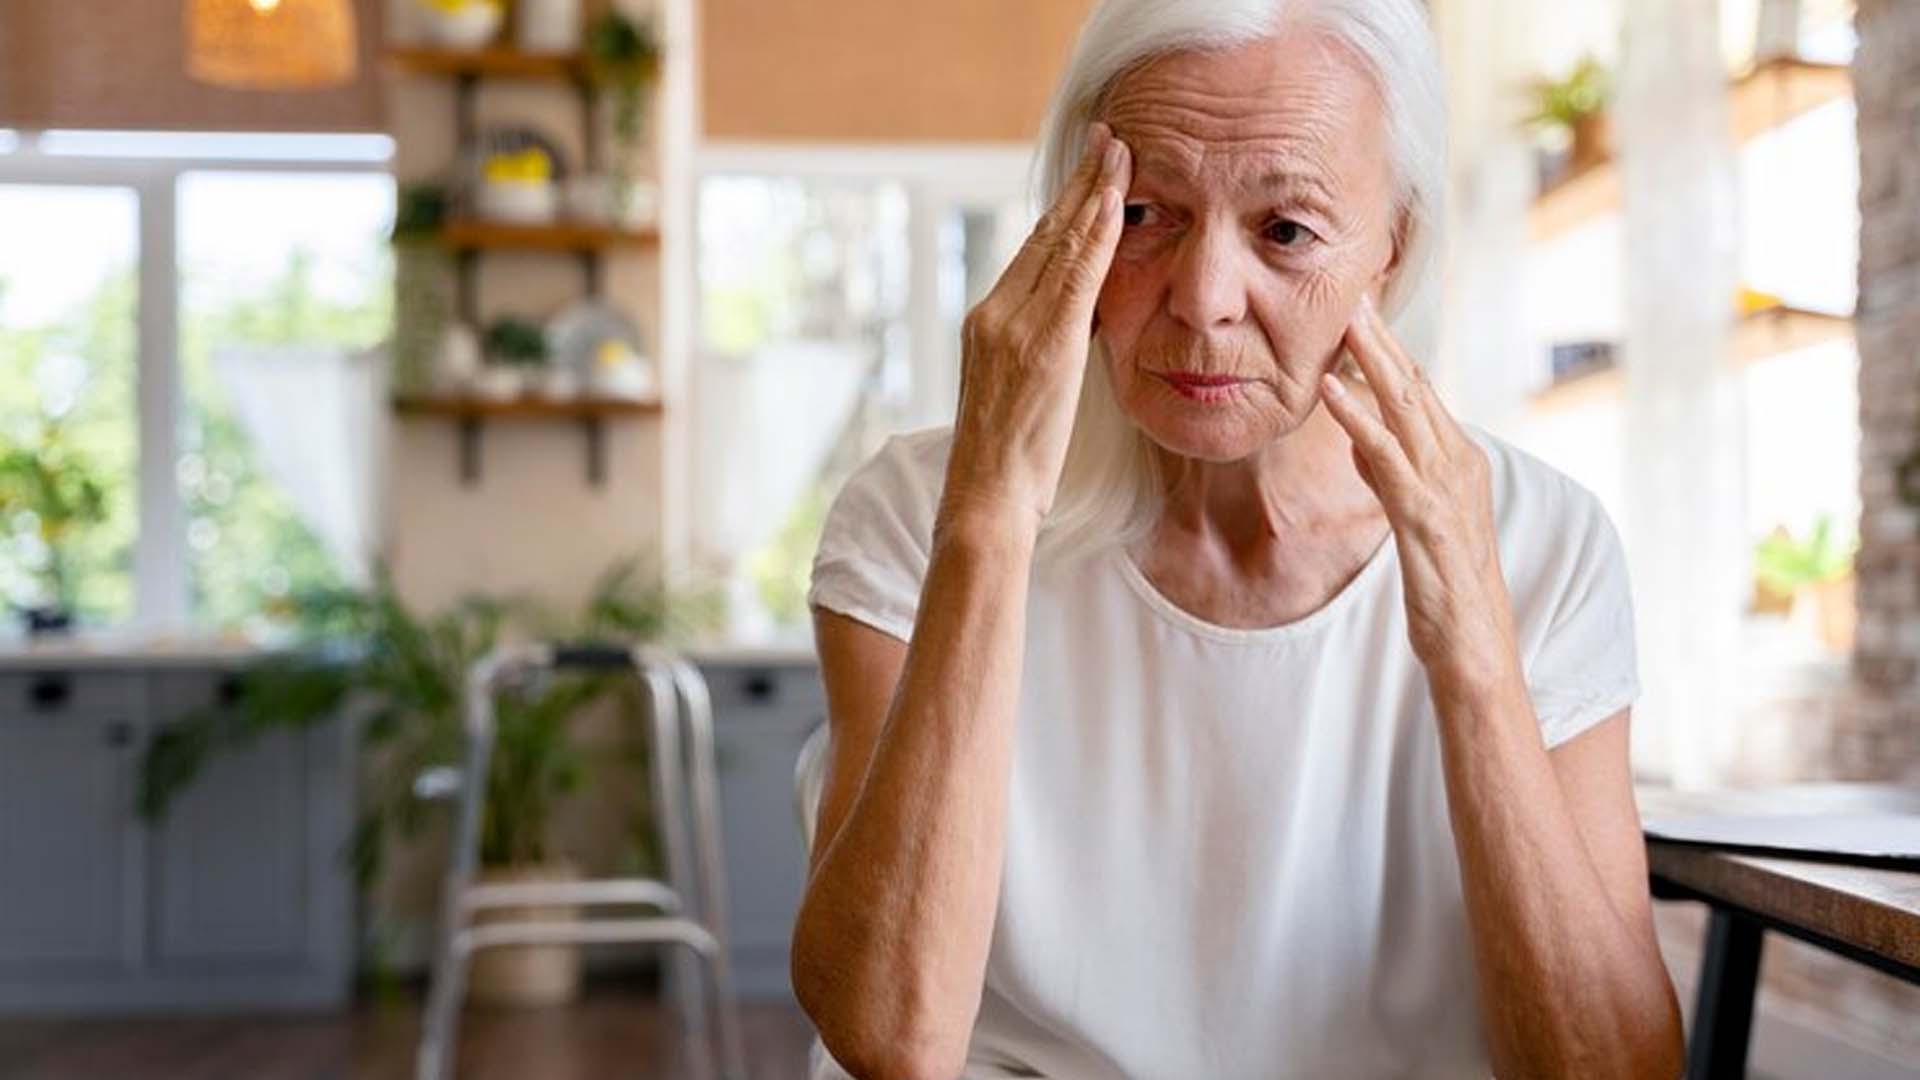 Elderly women with Alzheimer's Dementia